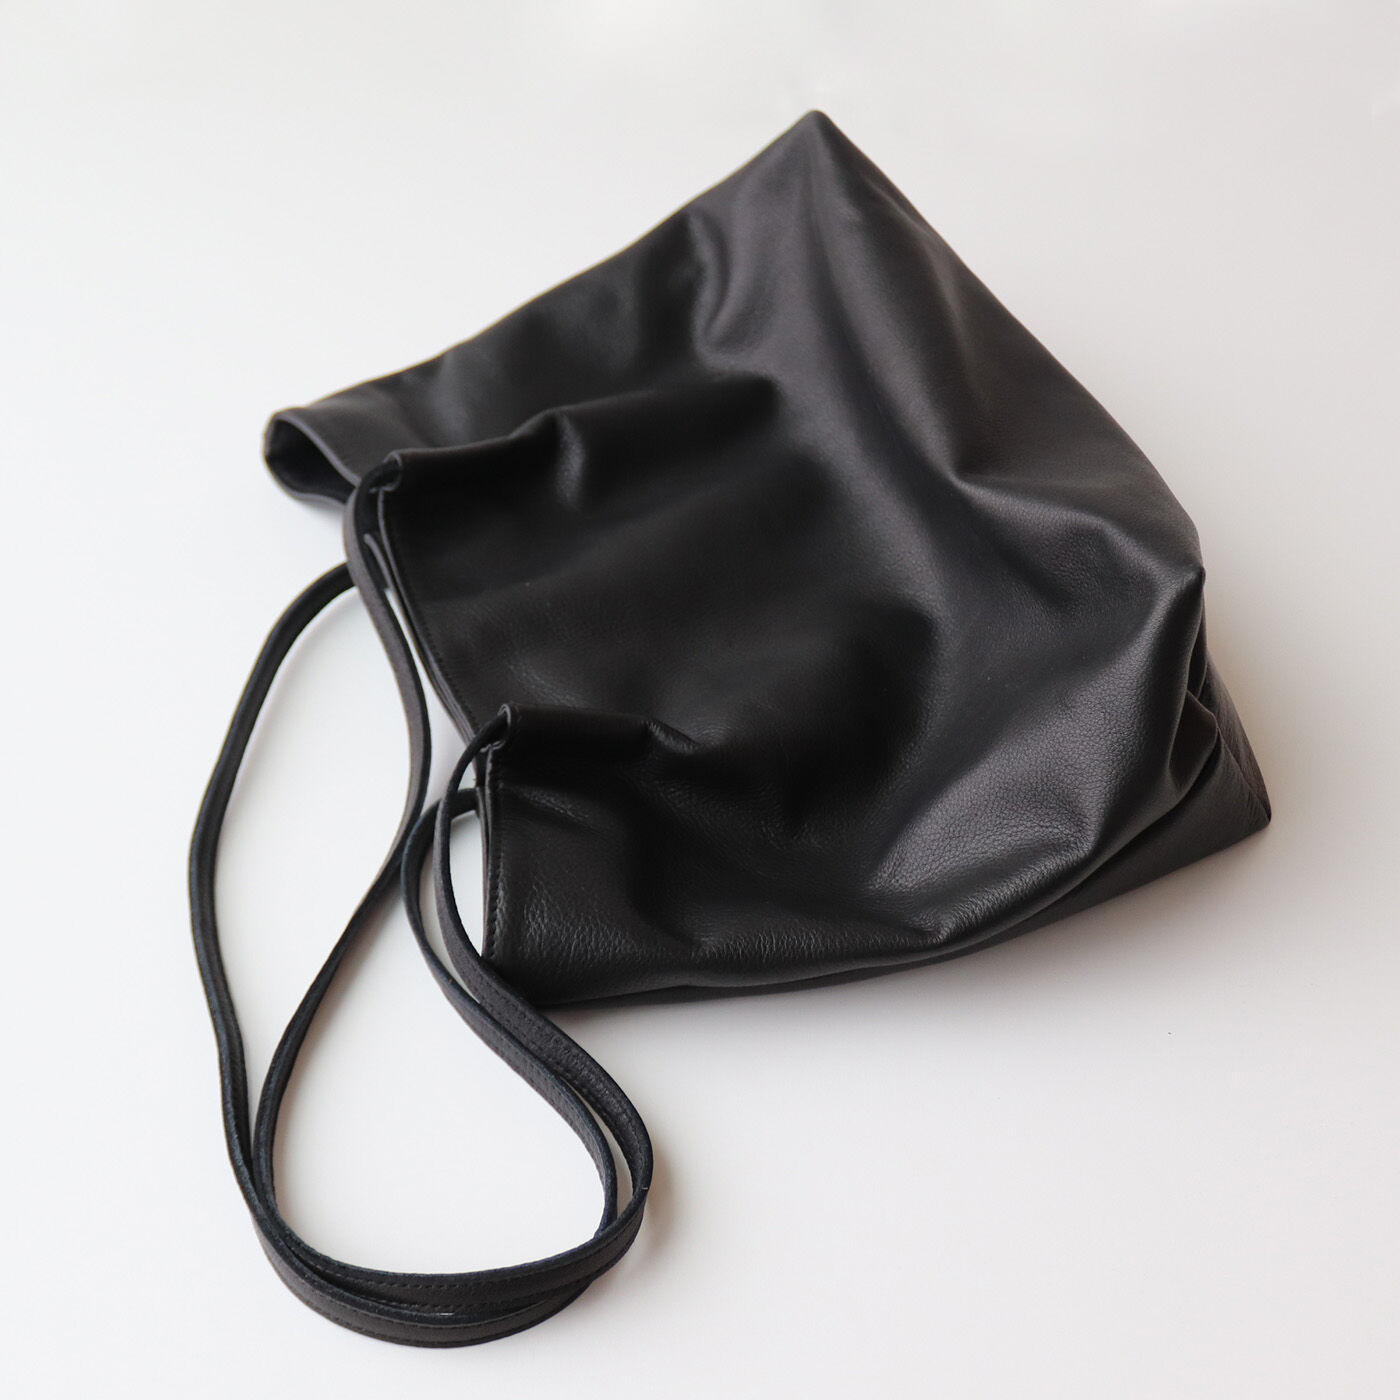 フェリシモコレクション|ブリリアンス神戸基金 KOBE PORT TOWER 福岡の鞄作家が作った 職人本革のカーポラヴォーロトート〈Black〉